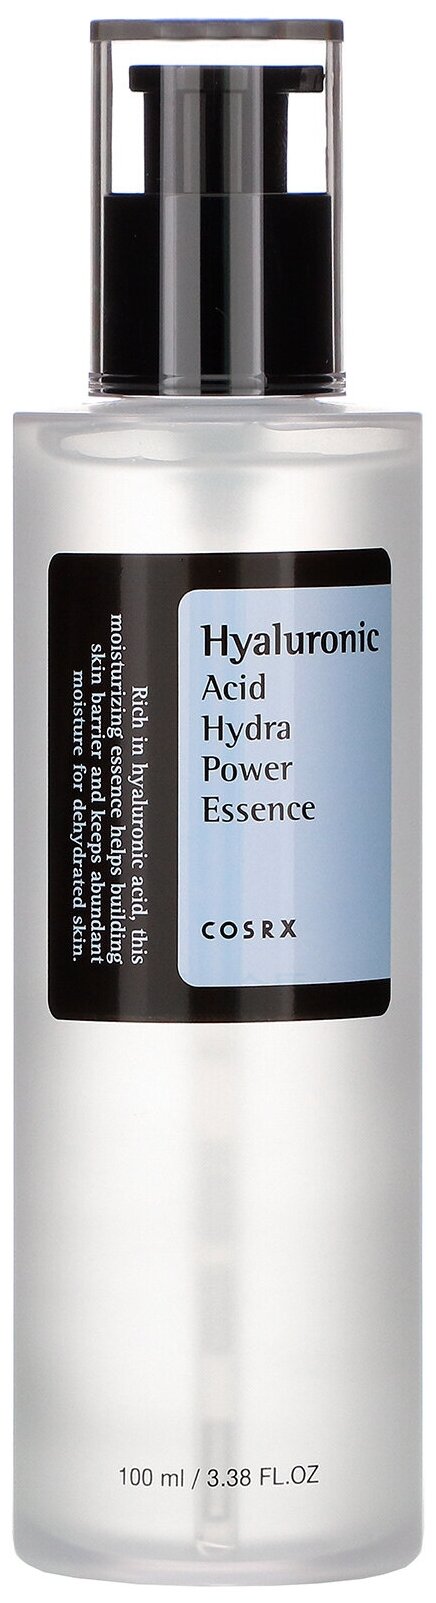 Эссенция увлажняющая с гиалуроновой кислотой Cosrx Hyaluronic Acid Hydra Power Essence